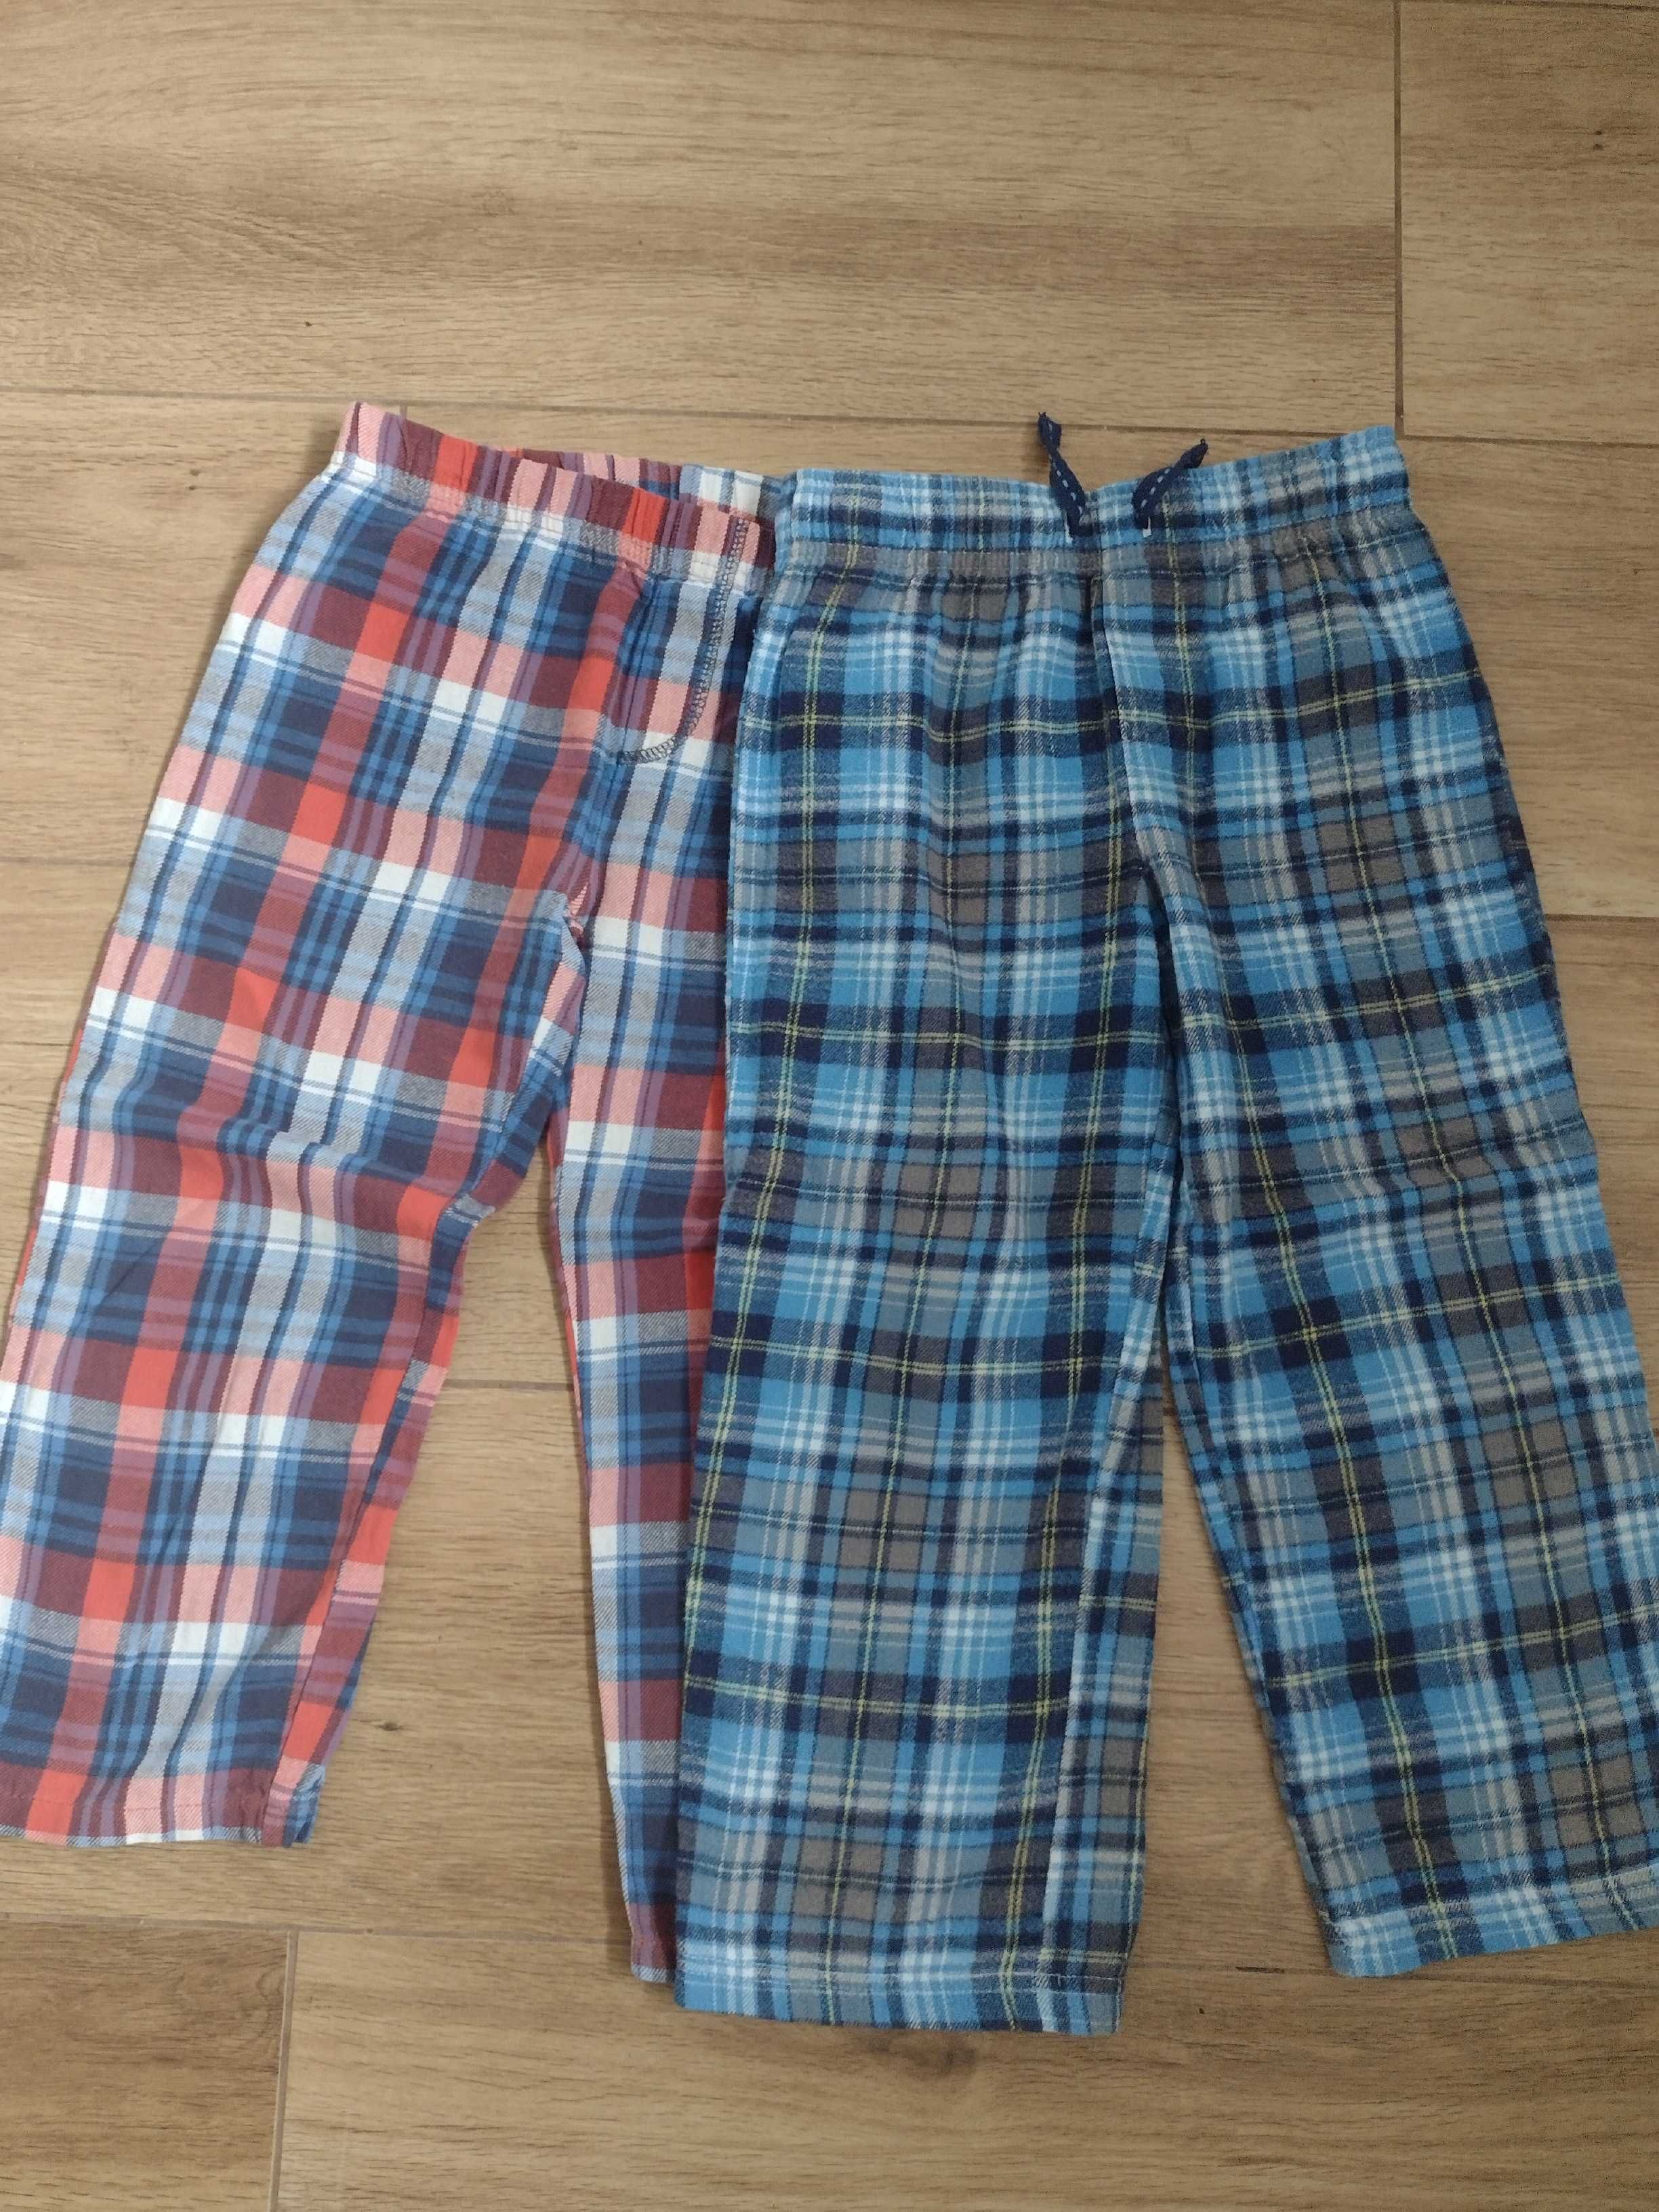 Piżama - spodnie od piżamy 98/104